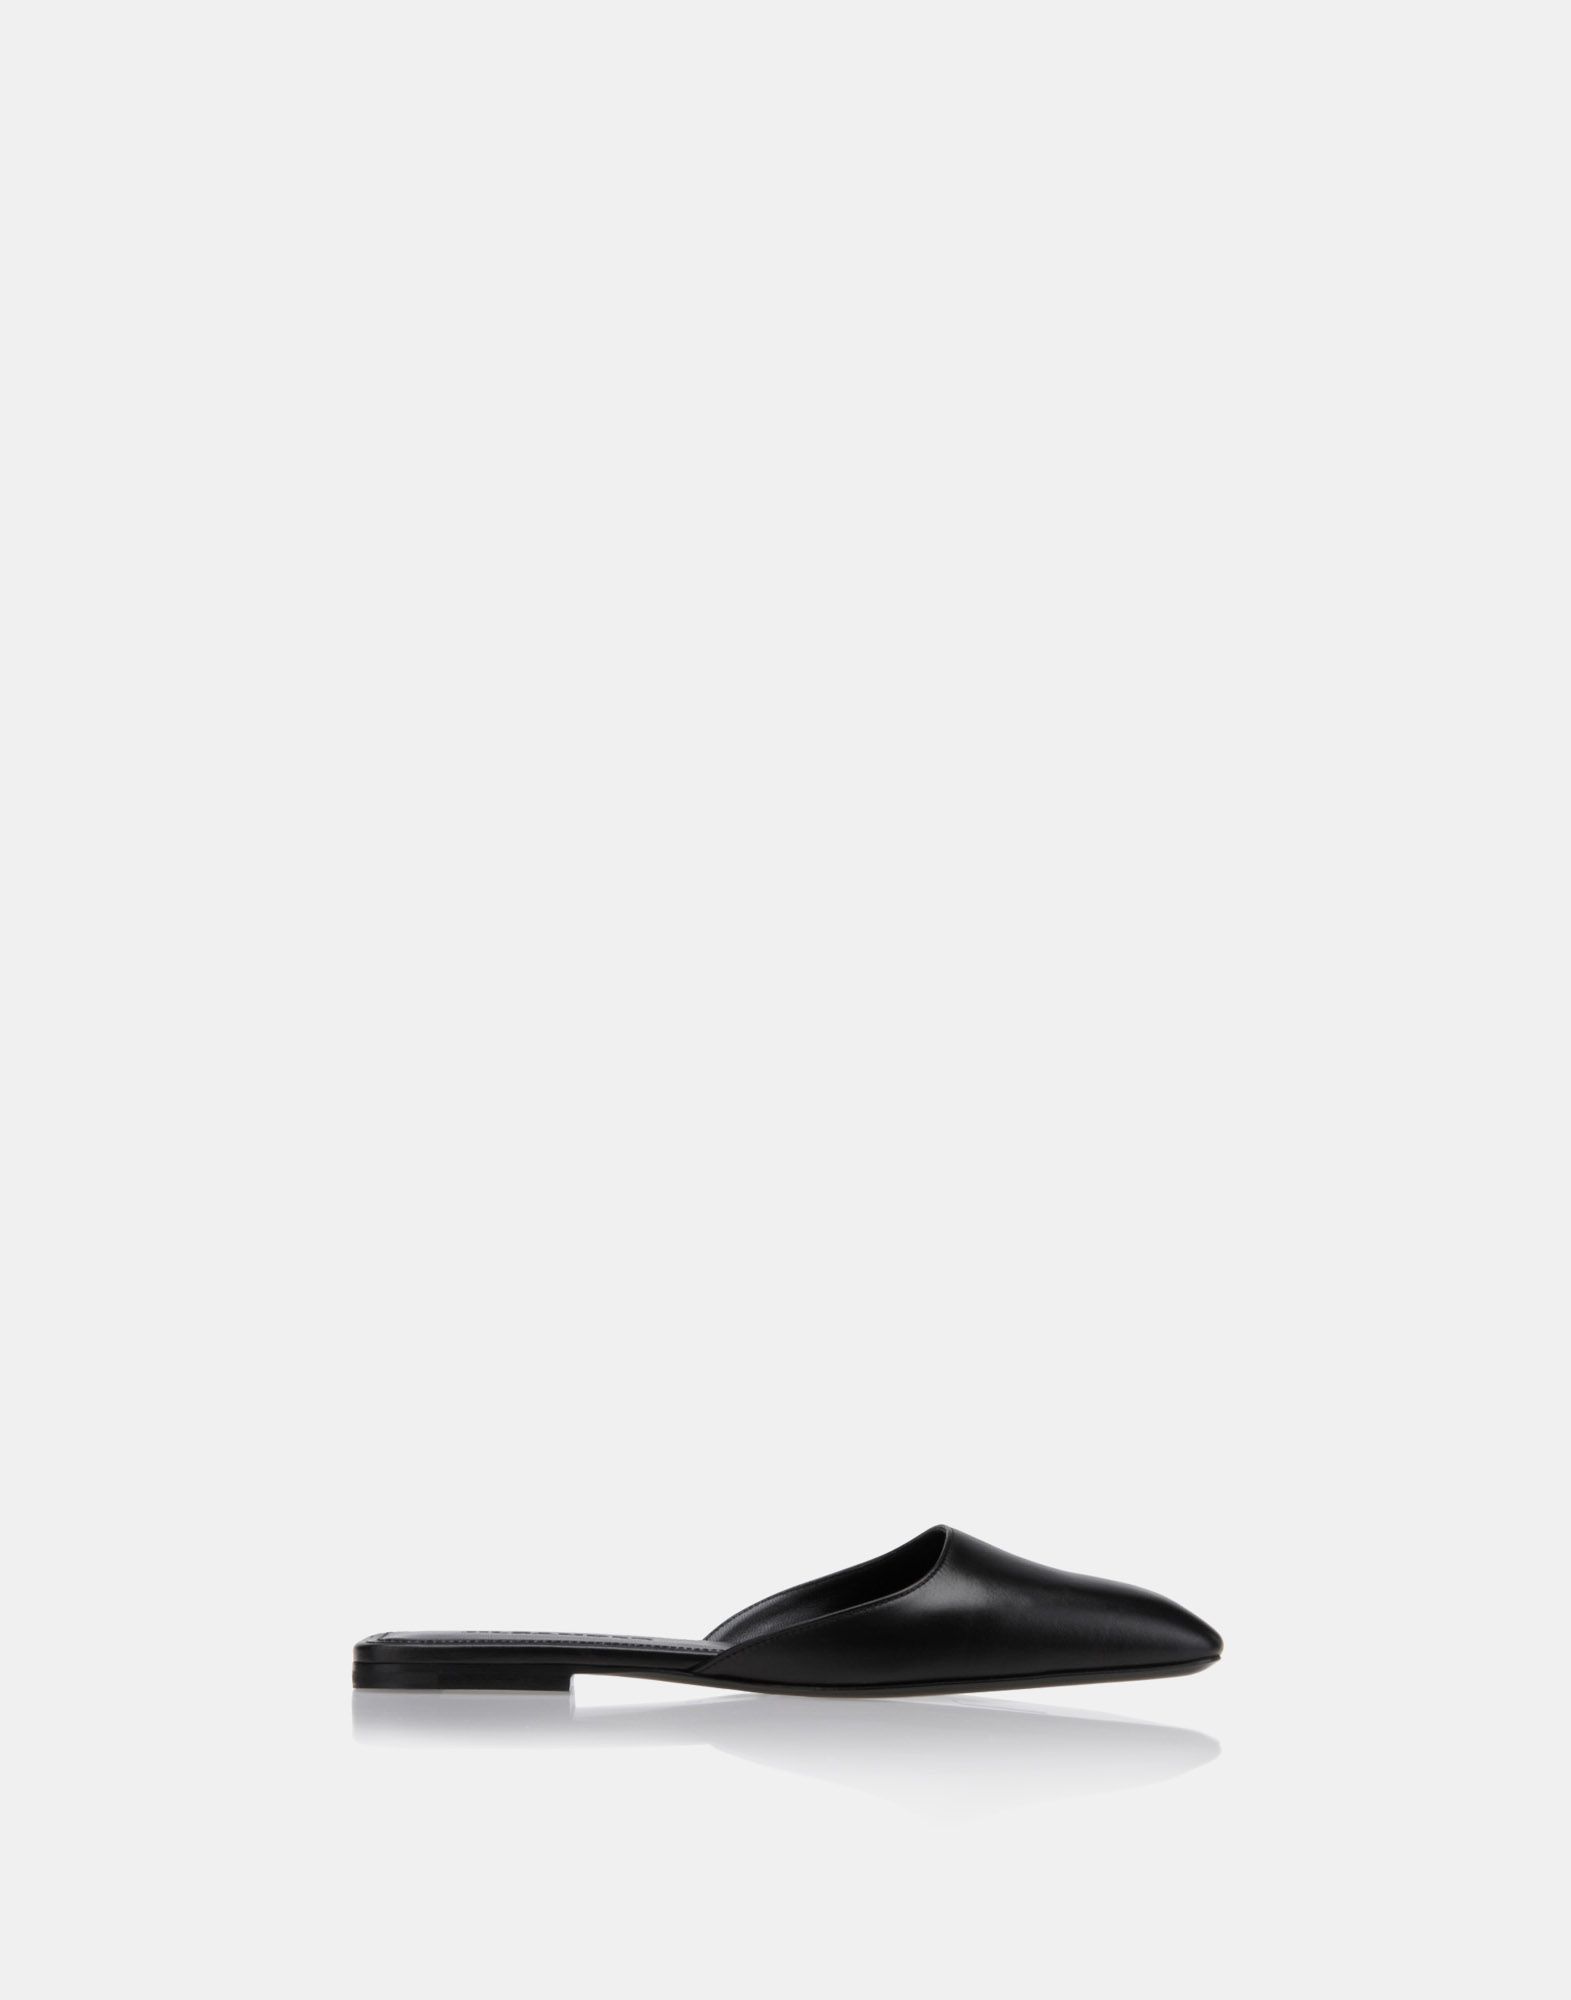 Sandals Women - Shoes Women on Jil Sander Online Store